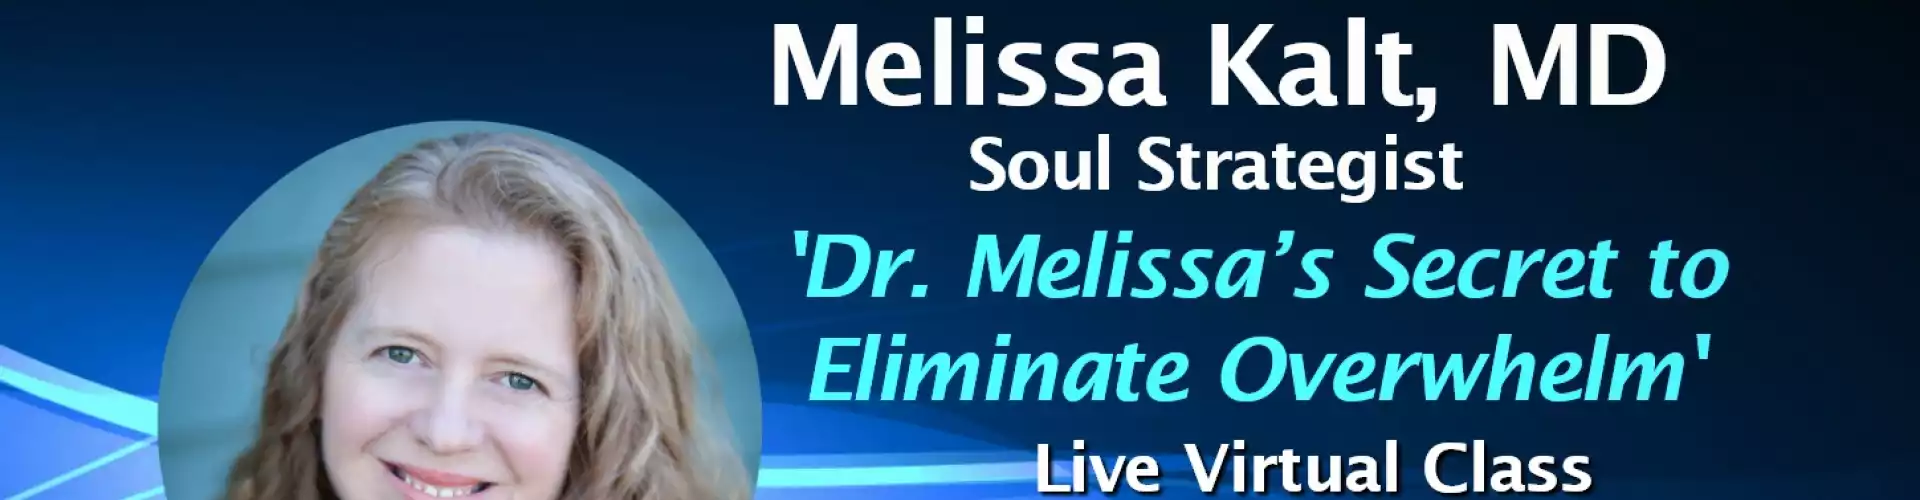 Dr. Melissa's Secret to Eliminate Overwhelm w WU Expert Dr. Melissa Kalt